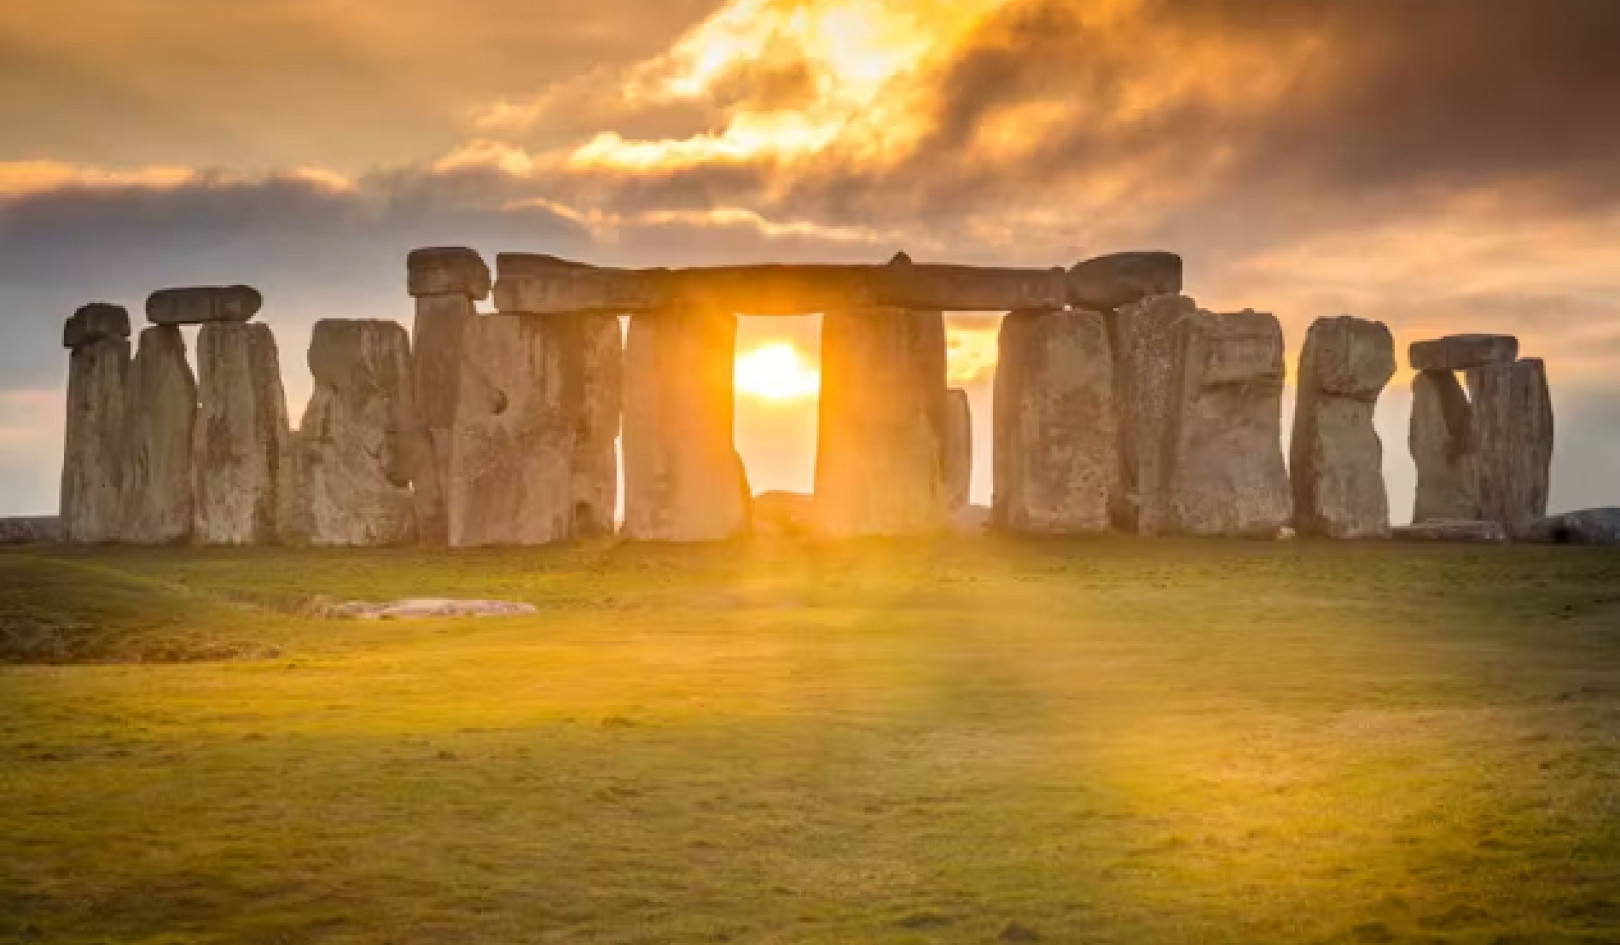 Bevittna de majestätiska solinriktningarna på Stonehenge varje midsommarnatt